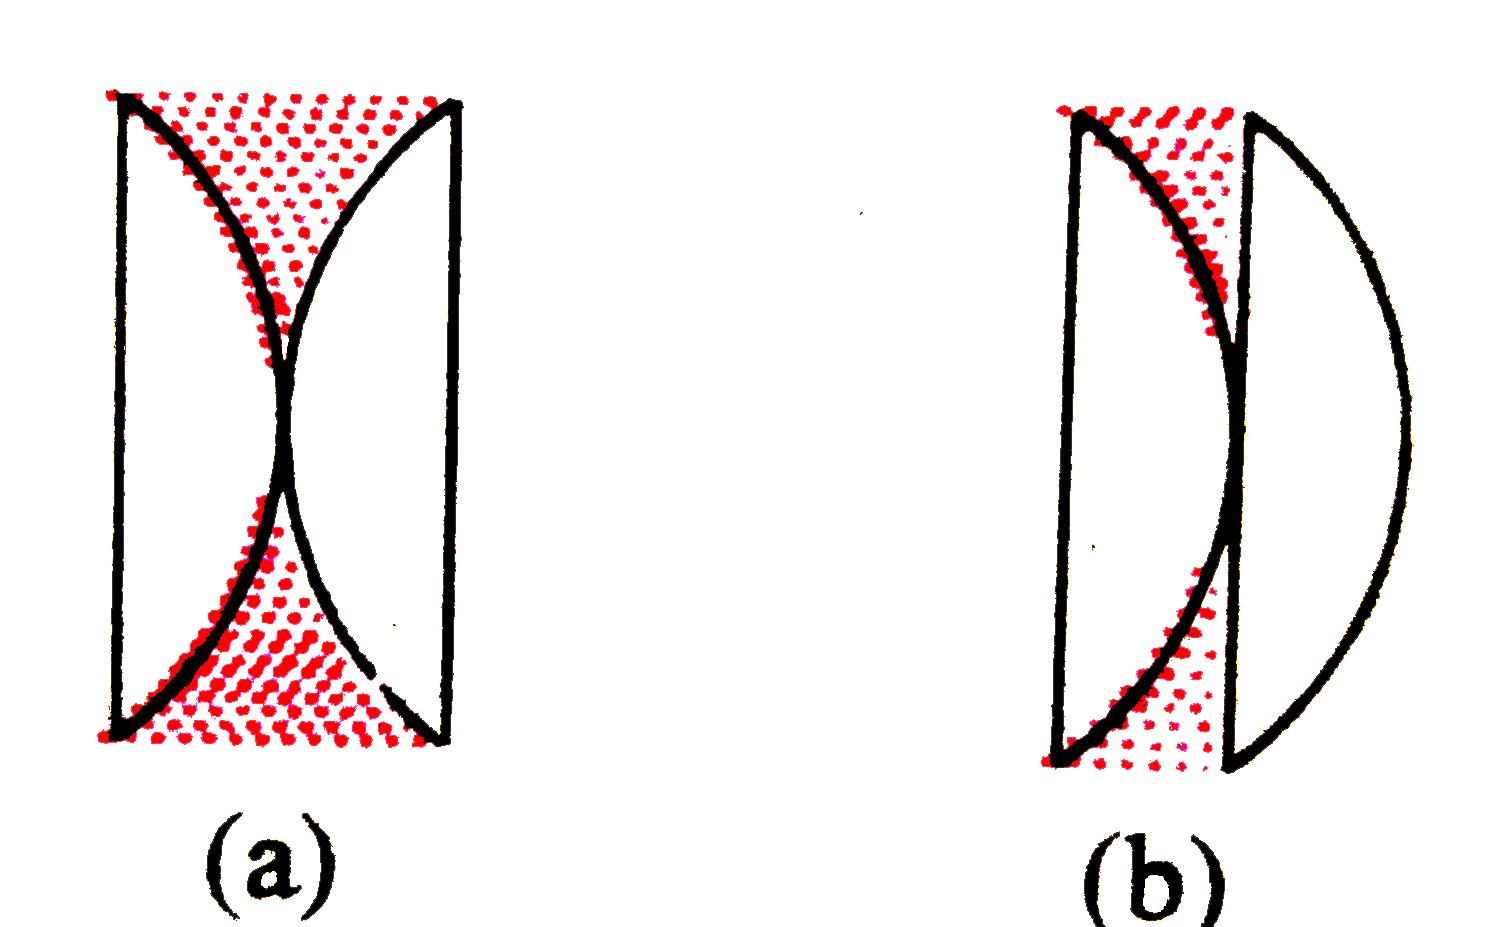 समरूप दो समतलोत्तल लेंस (mu= 1-54) के मध्य चित्र (a) और (b) की भाँति उनके मध्य 1.62 अपवर्तनांक का कोई द्रव भरा गया है। प्रत्येक स्थिति में संयुक्त लेंस की प्रकृति बताइए।